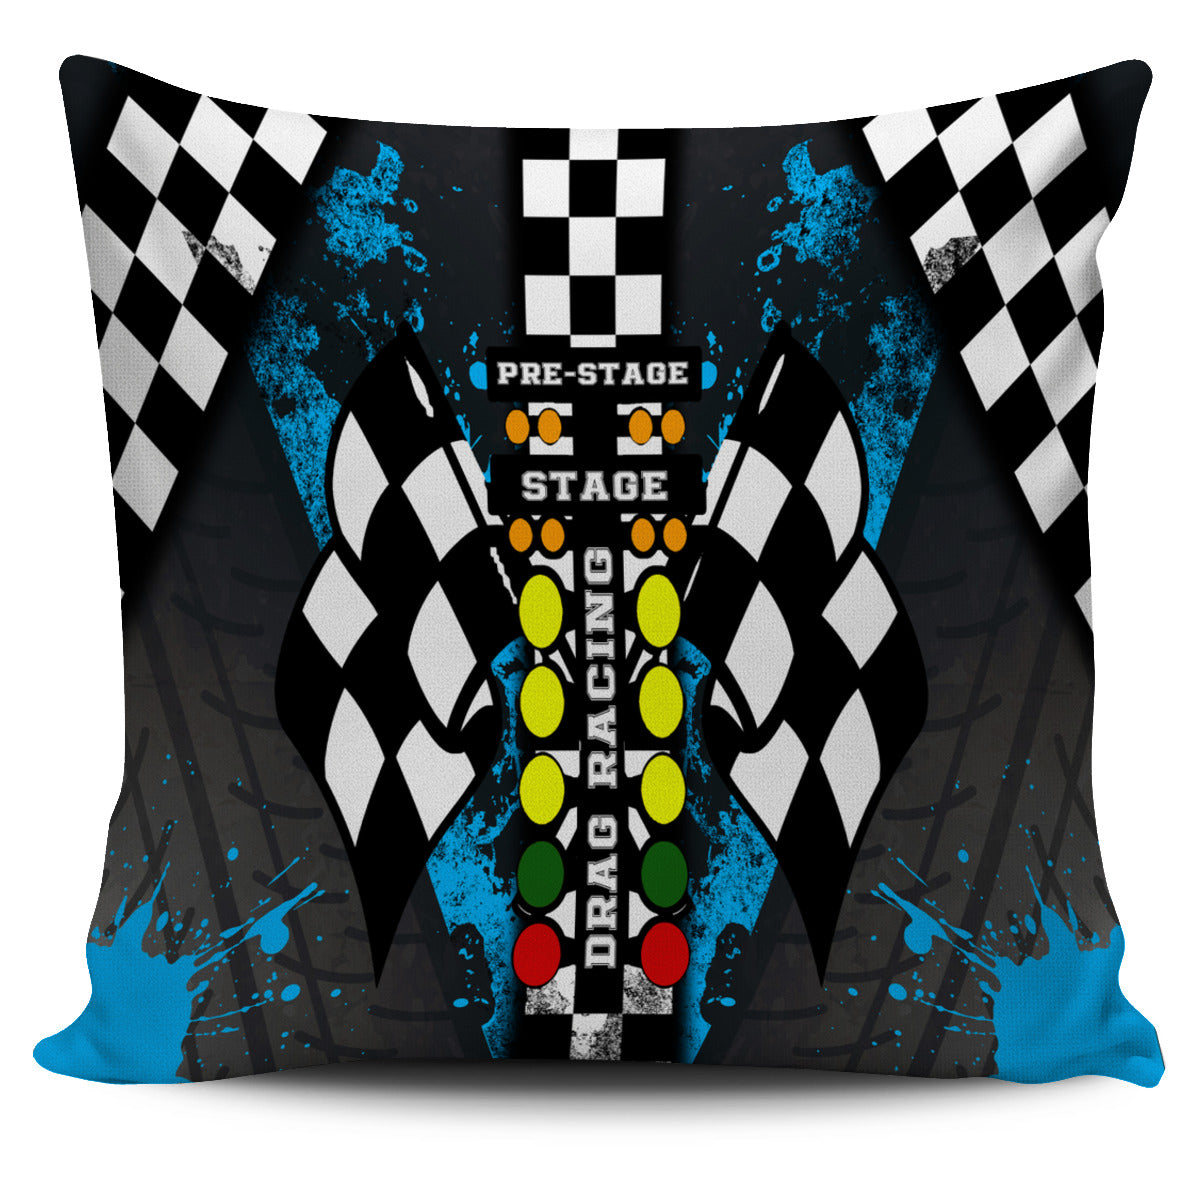 Drag Racing Pillow covers Carolina Blue